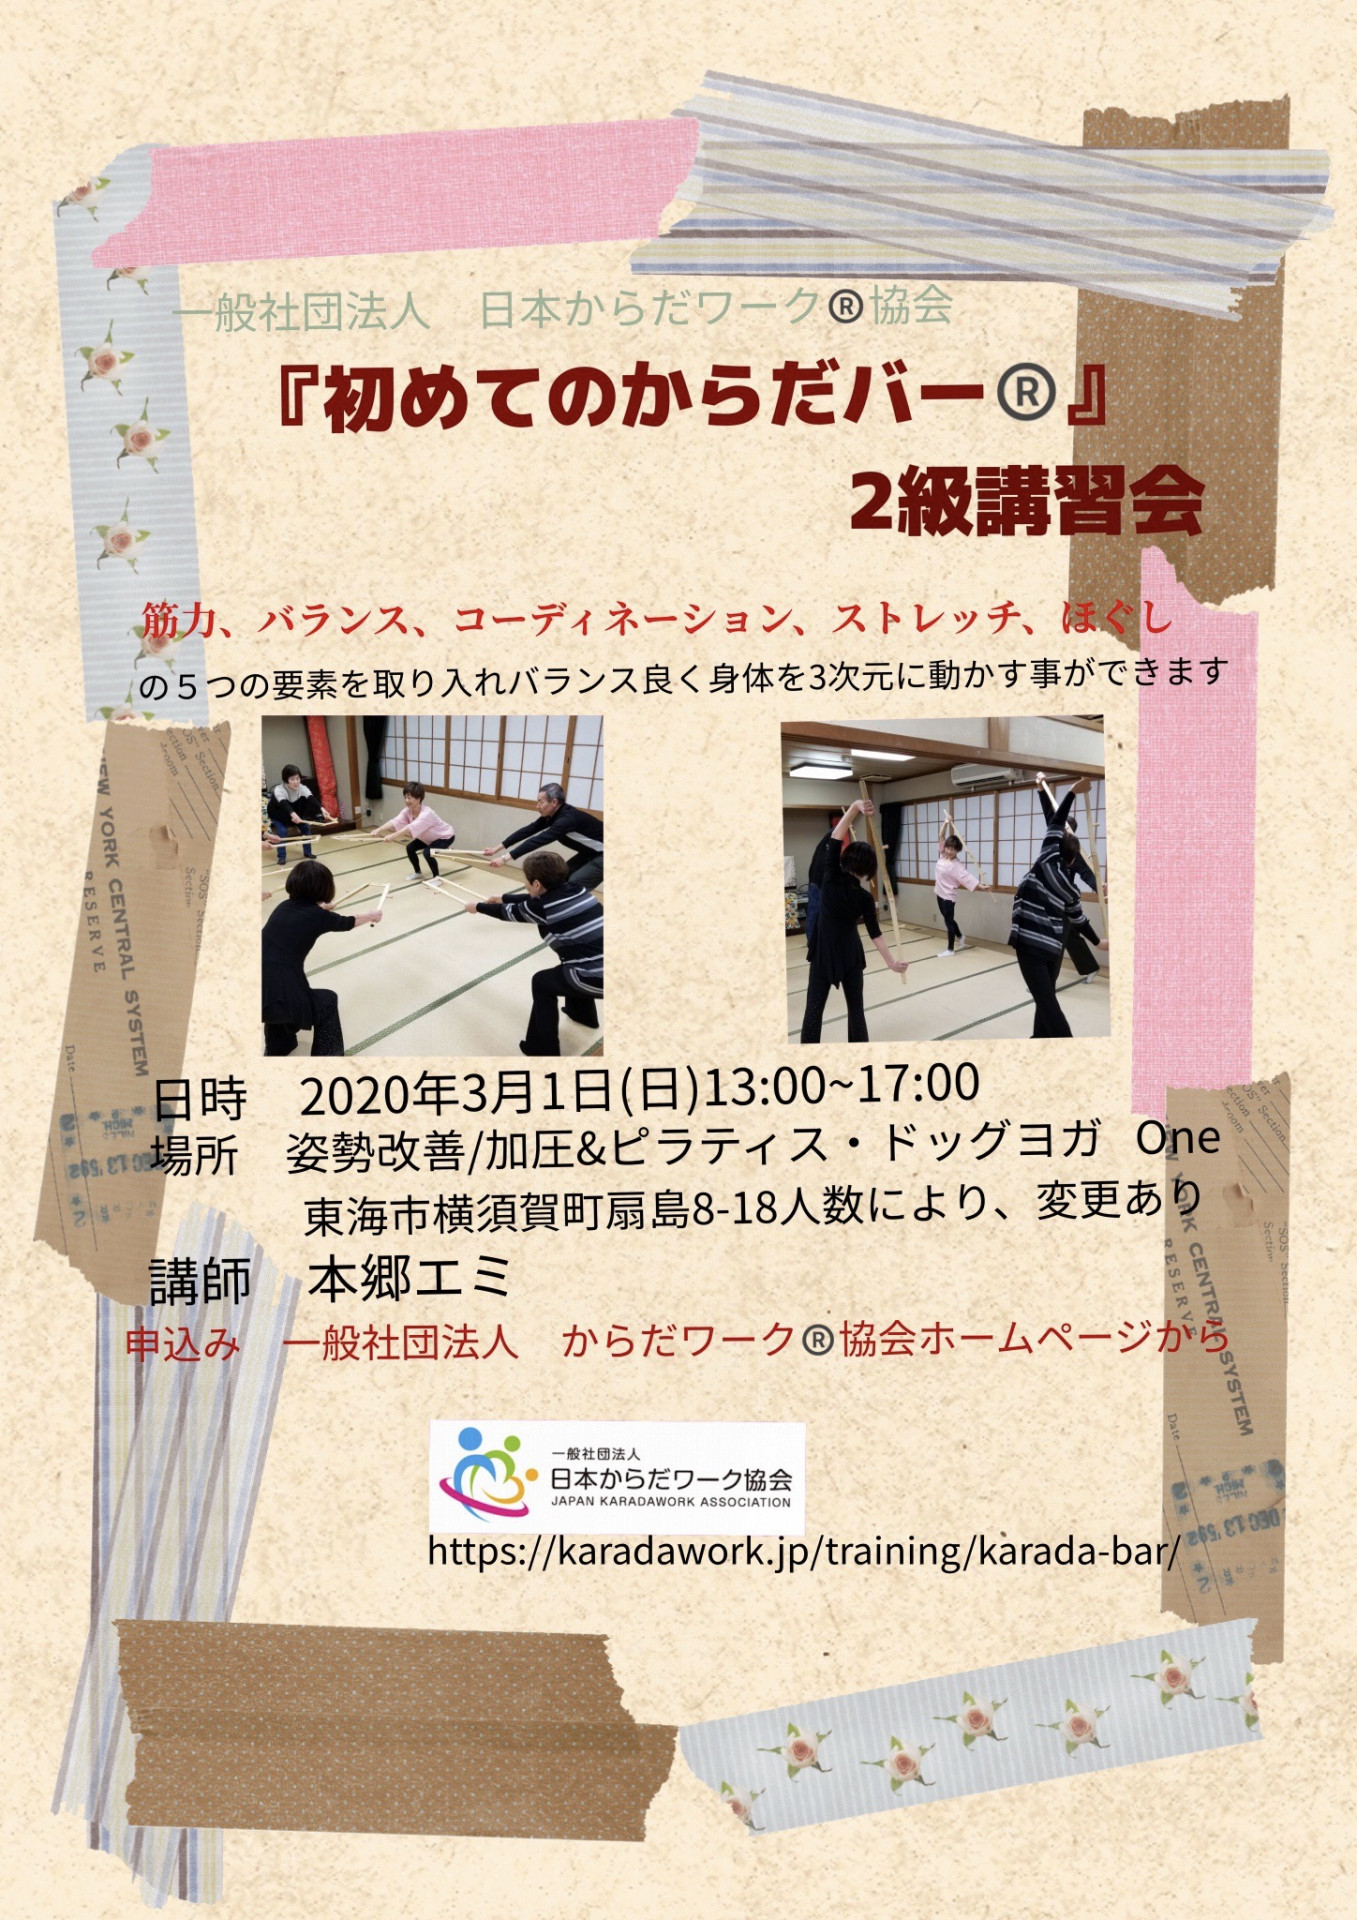 愛知県で沢山の方を笑顔にする仕事をしていきませんか？『姿勢改善/加圧&ピラティス・ドッグヨガ   One』